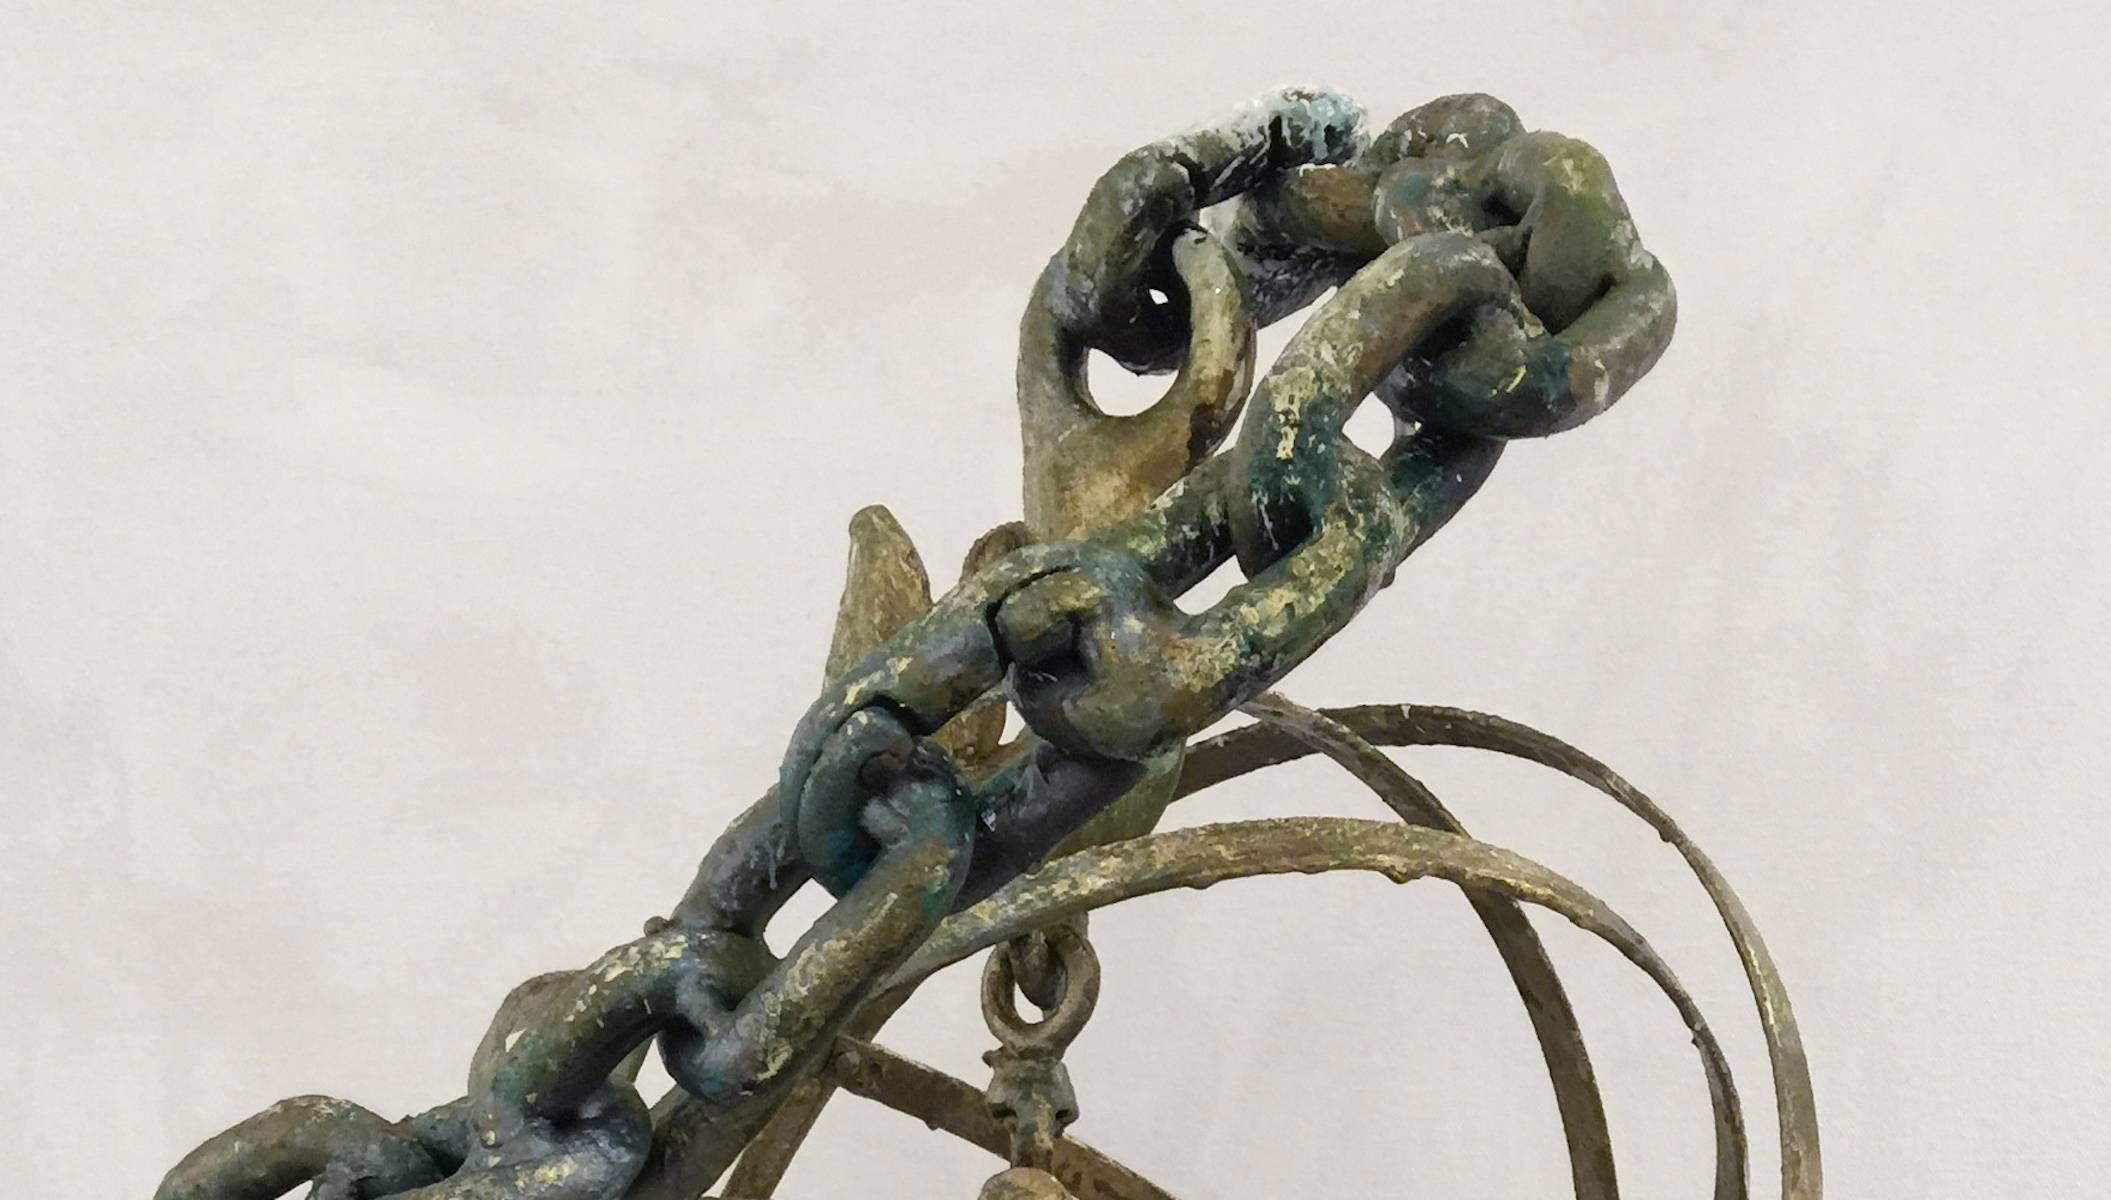 Archimedes-Wirbel – Sculpture von Terry Poulos